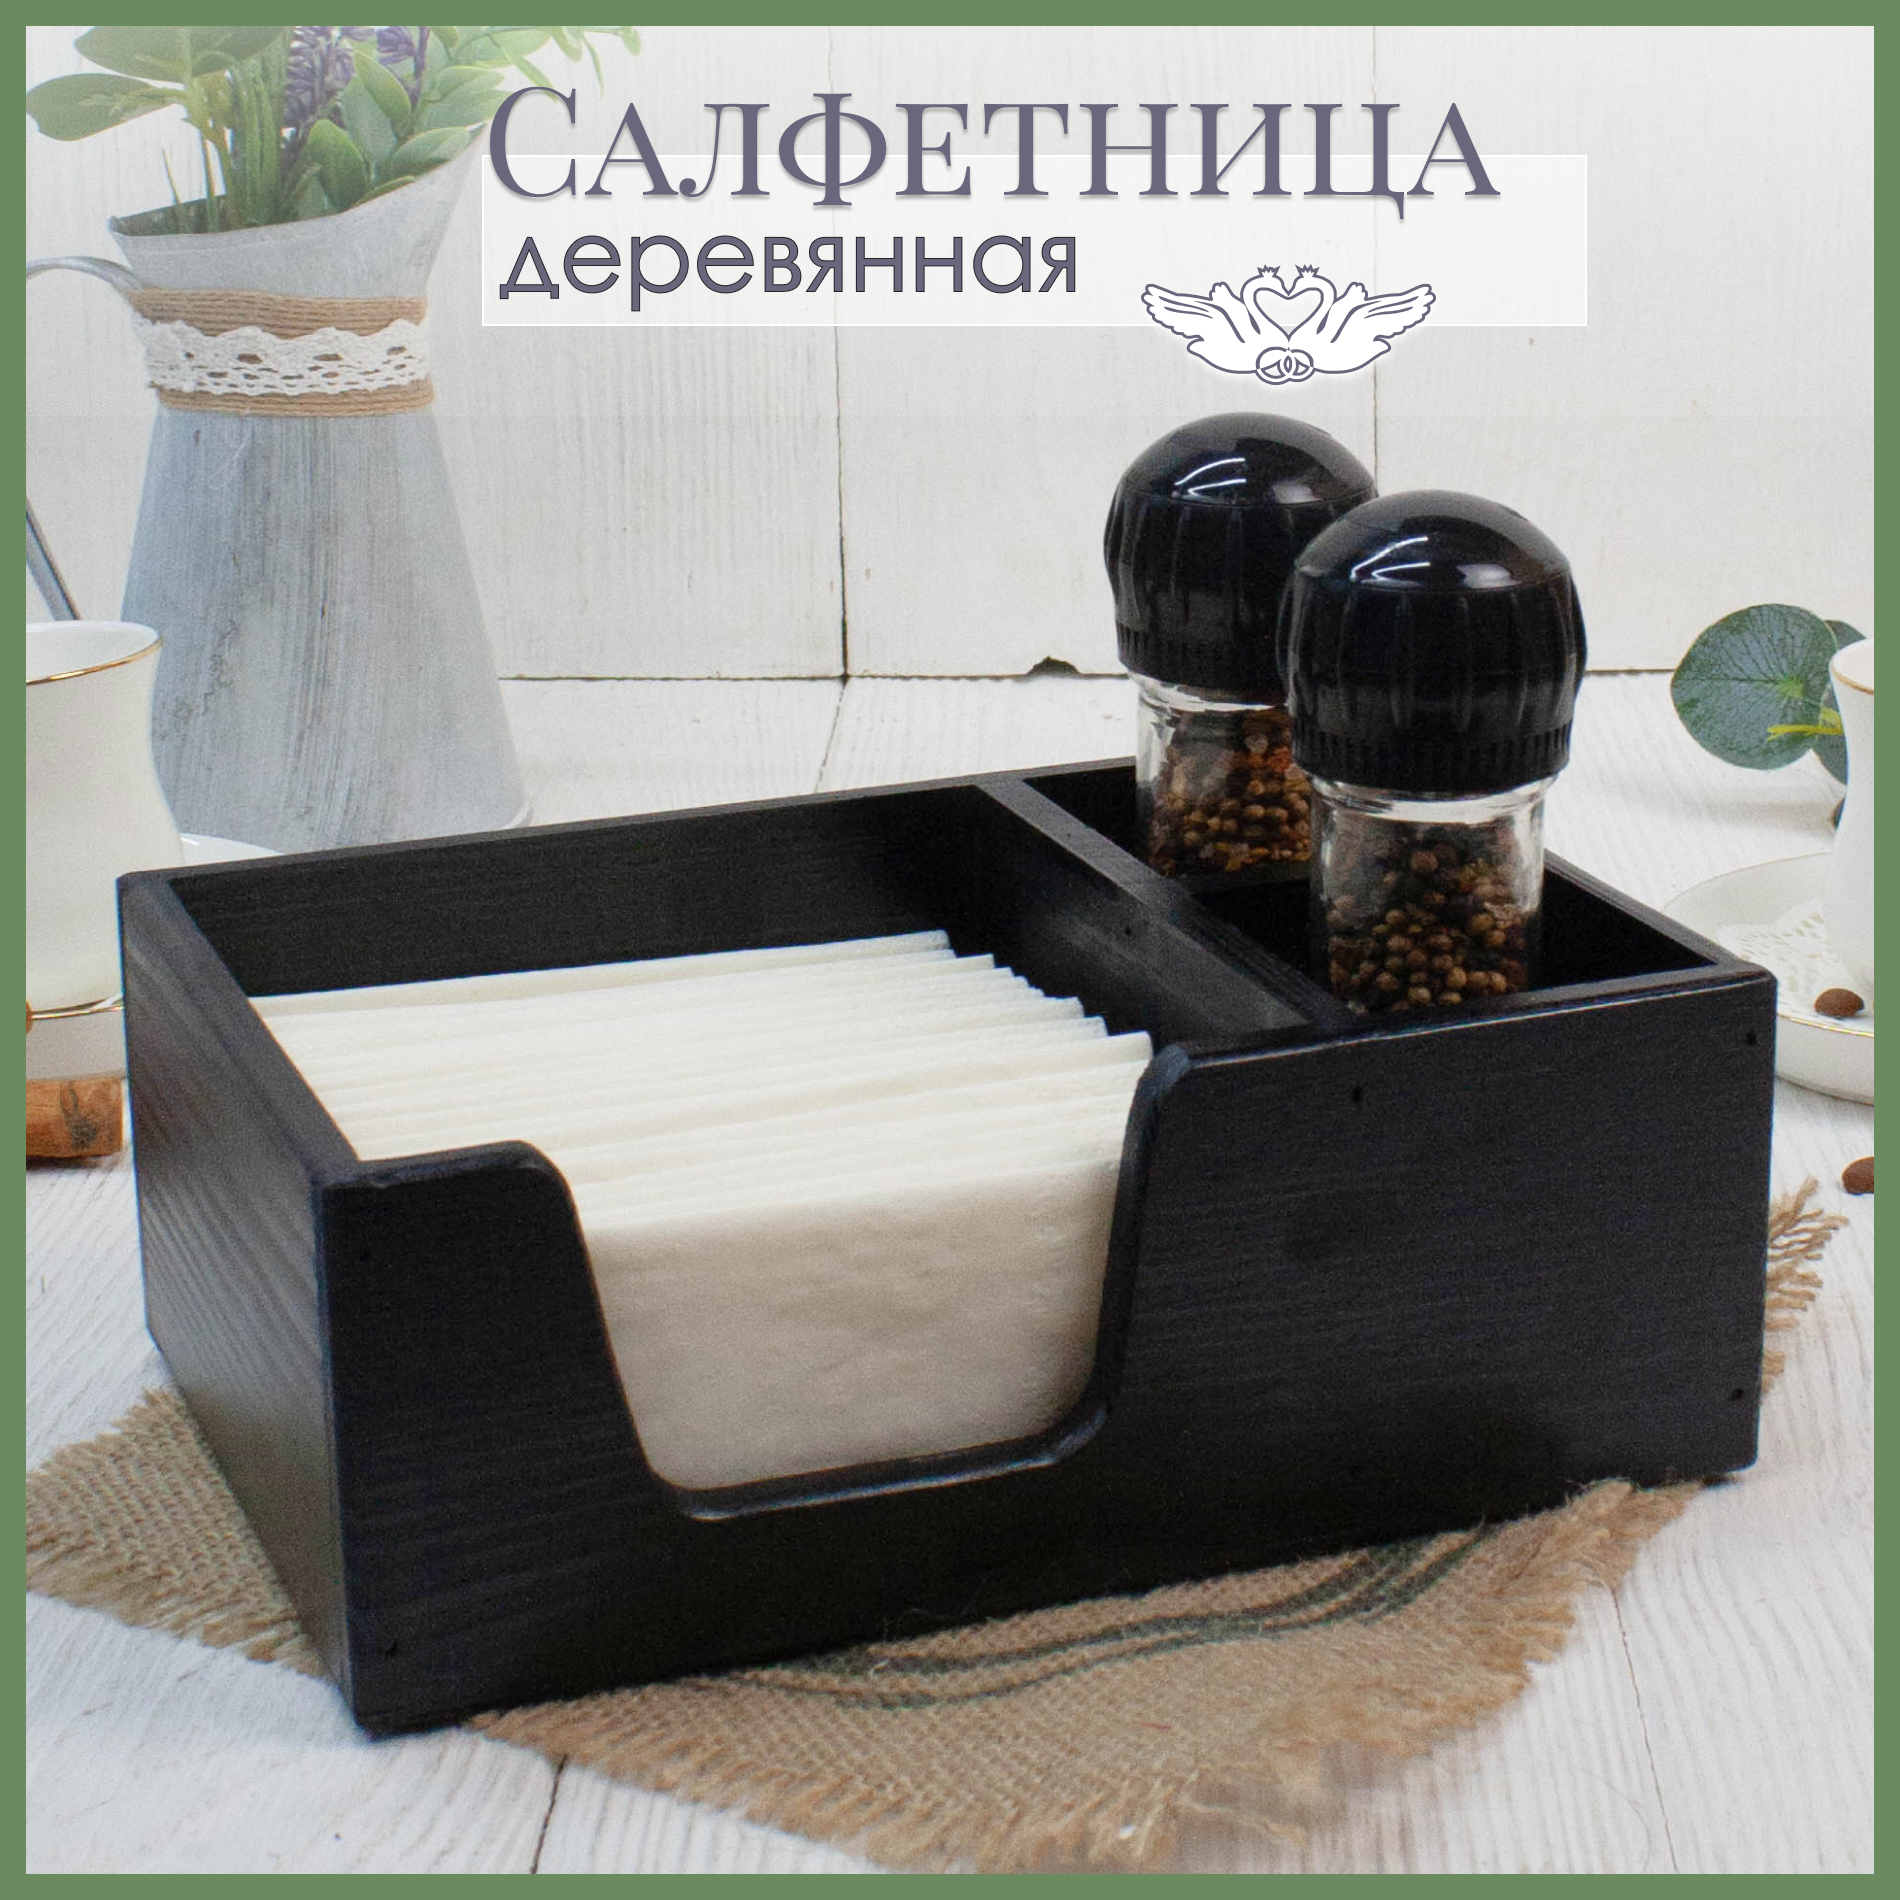 Салфетница-органайзер на стол дерево сосна (21*14,5*7,5см). Бокс для специй и салфеток. Цвет Черный. Декор для кухни. ТМ "Канышевы"